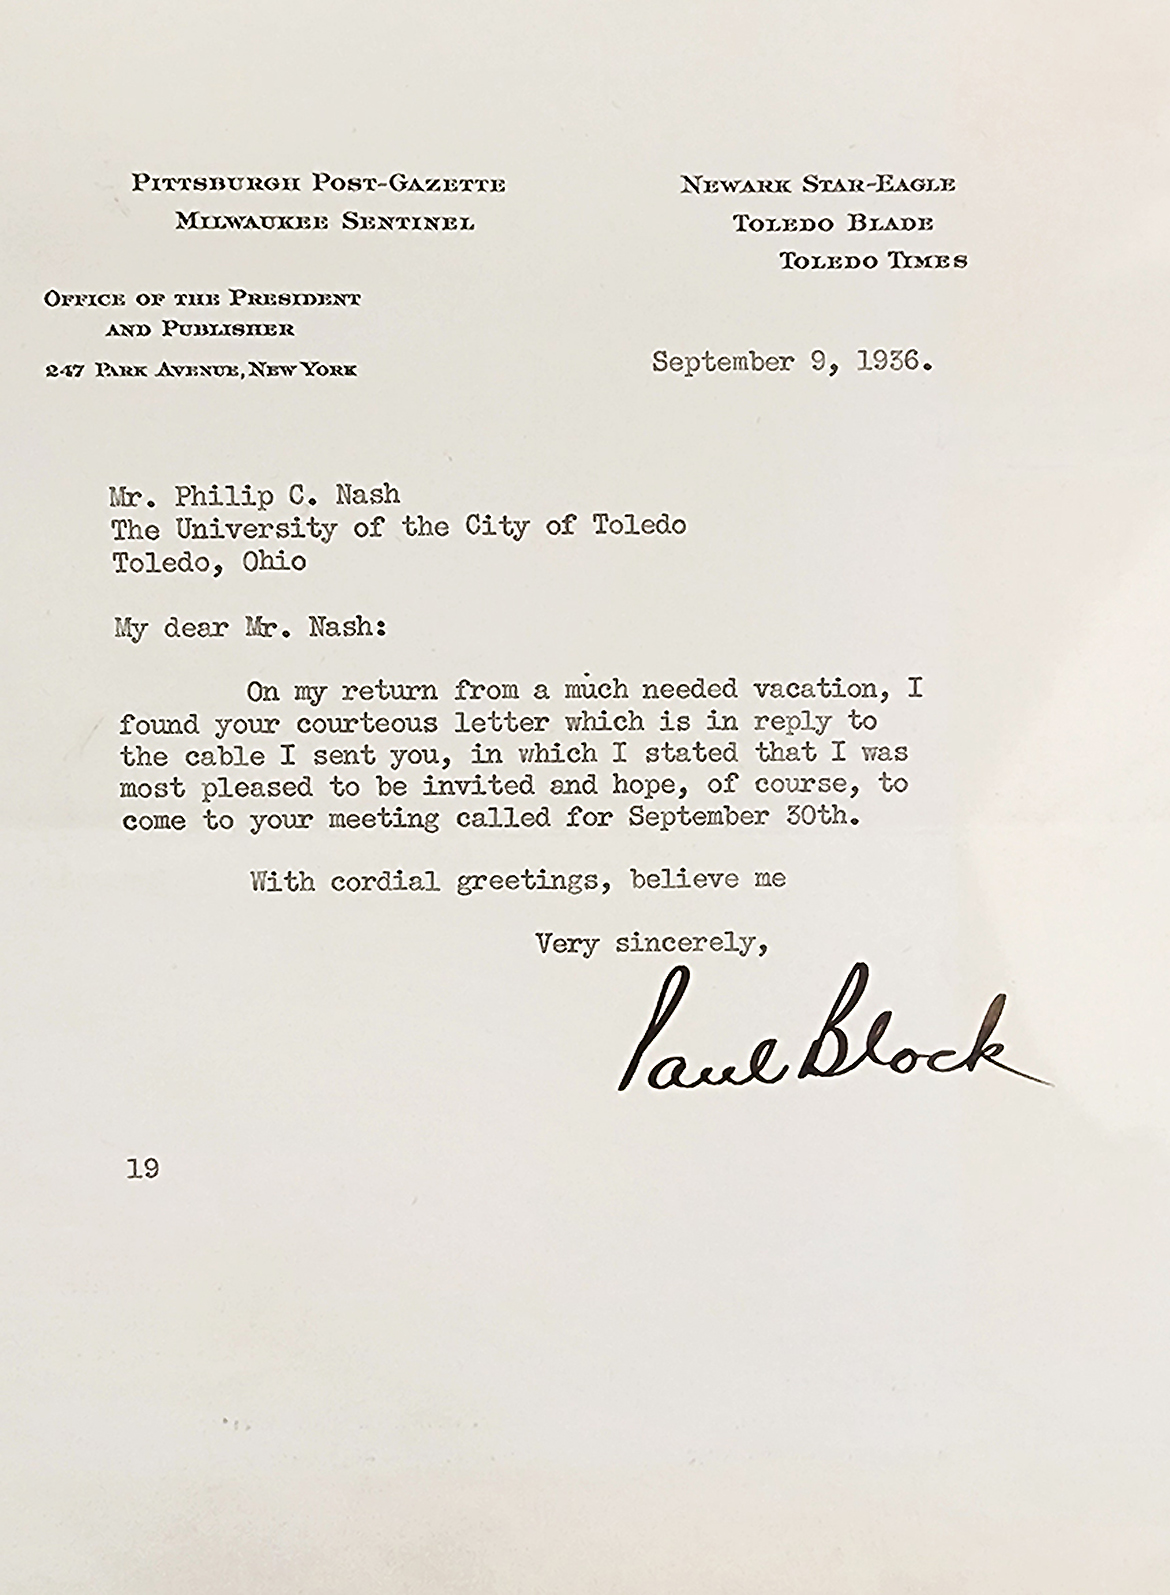 Letter from Paul Block to President Nash, September 9, 1936